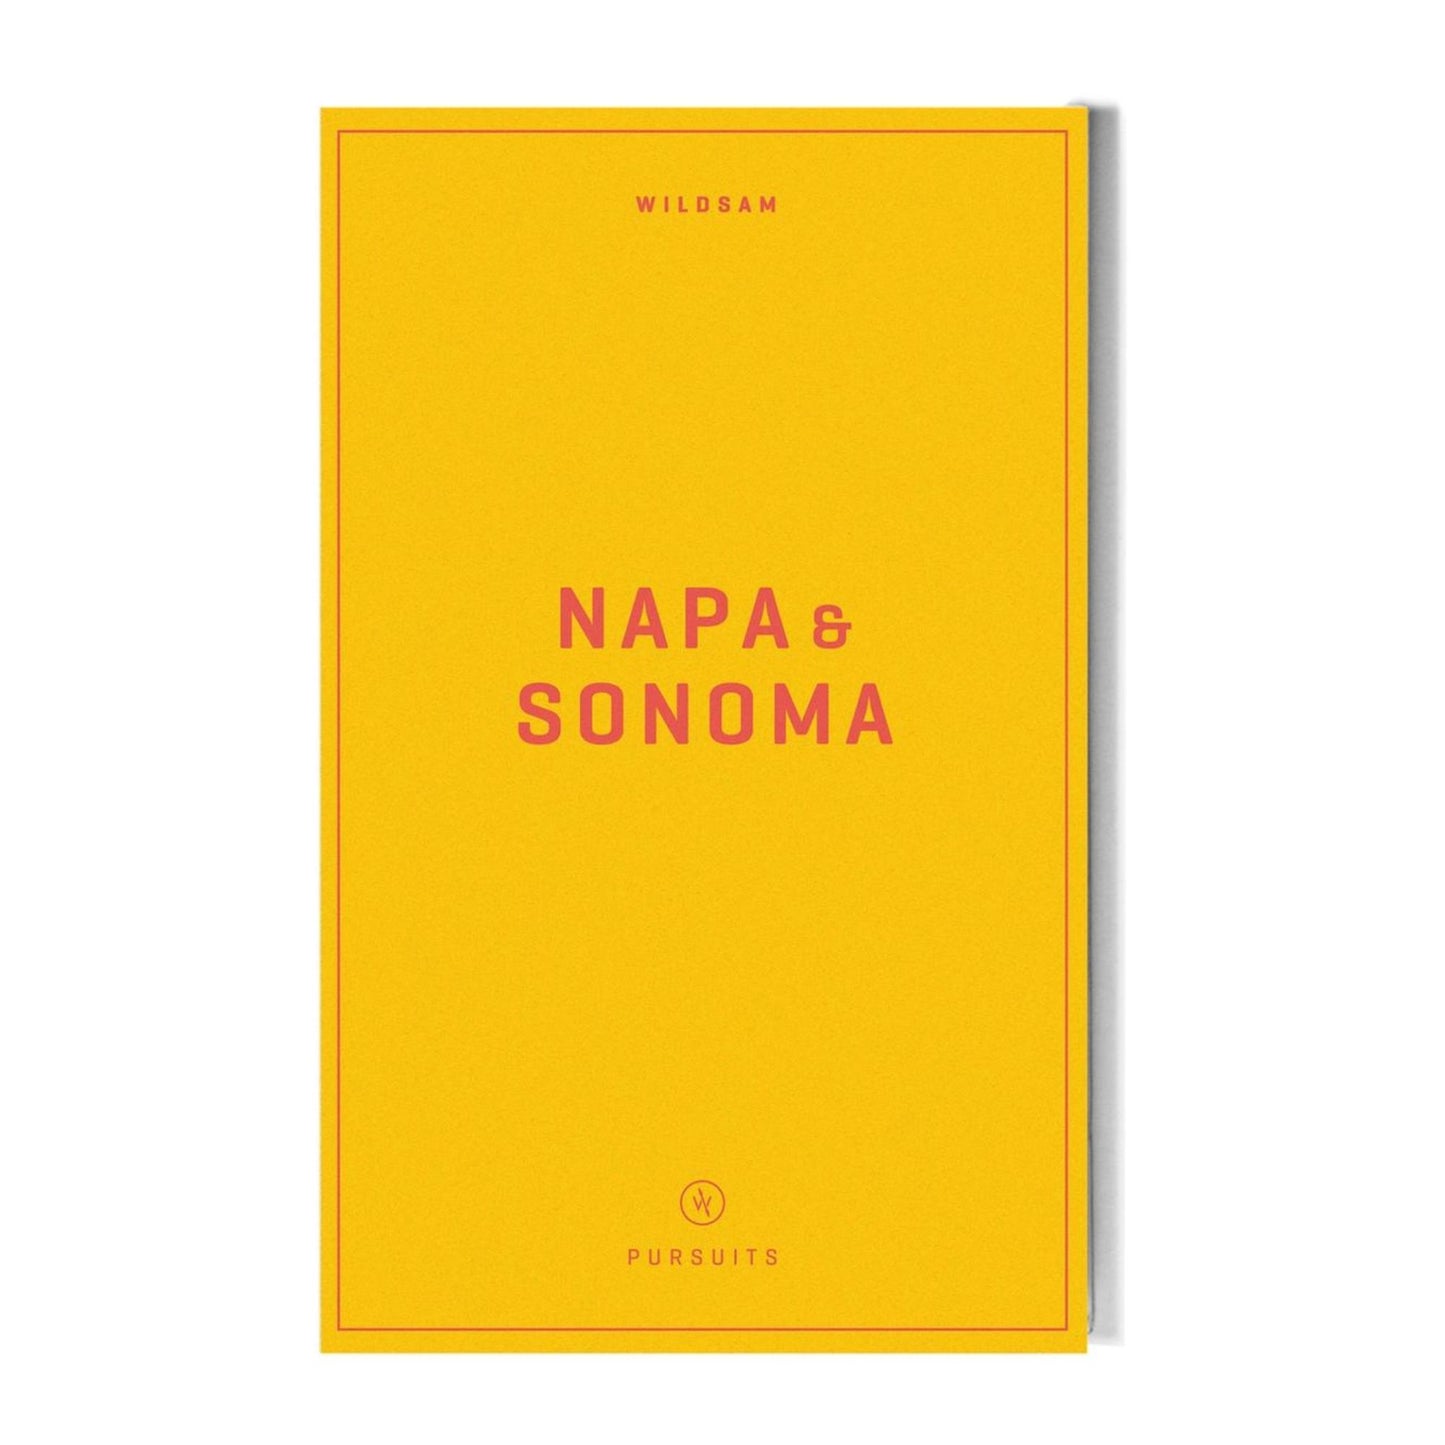 WildSam Guide Napa & Sonoma